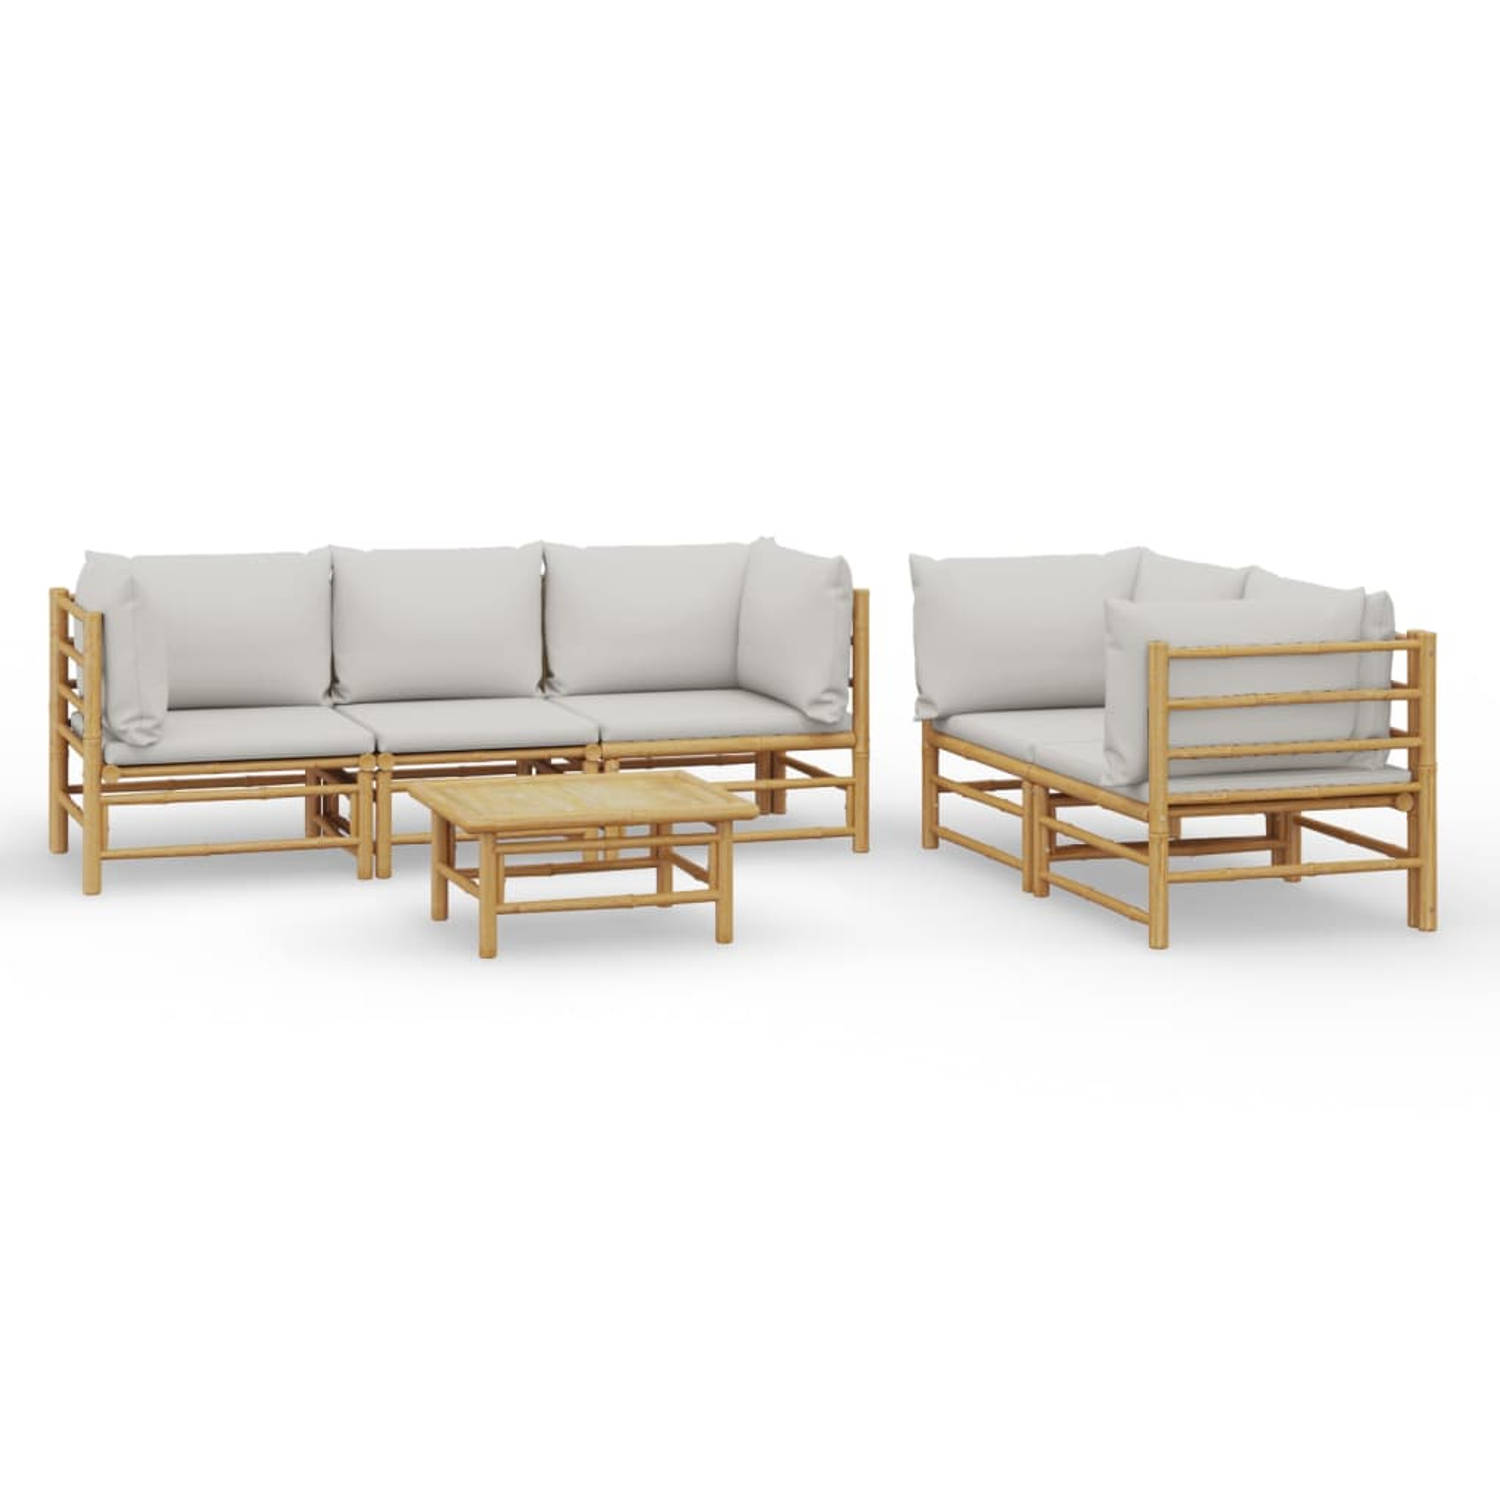 The Living Store Bamboe Loungeset - Modulair ontwerp - Comfortabel zitten - Inclusief tafel en kussens - Duurzaam materiaal